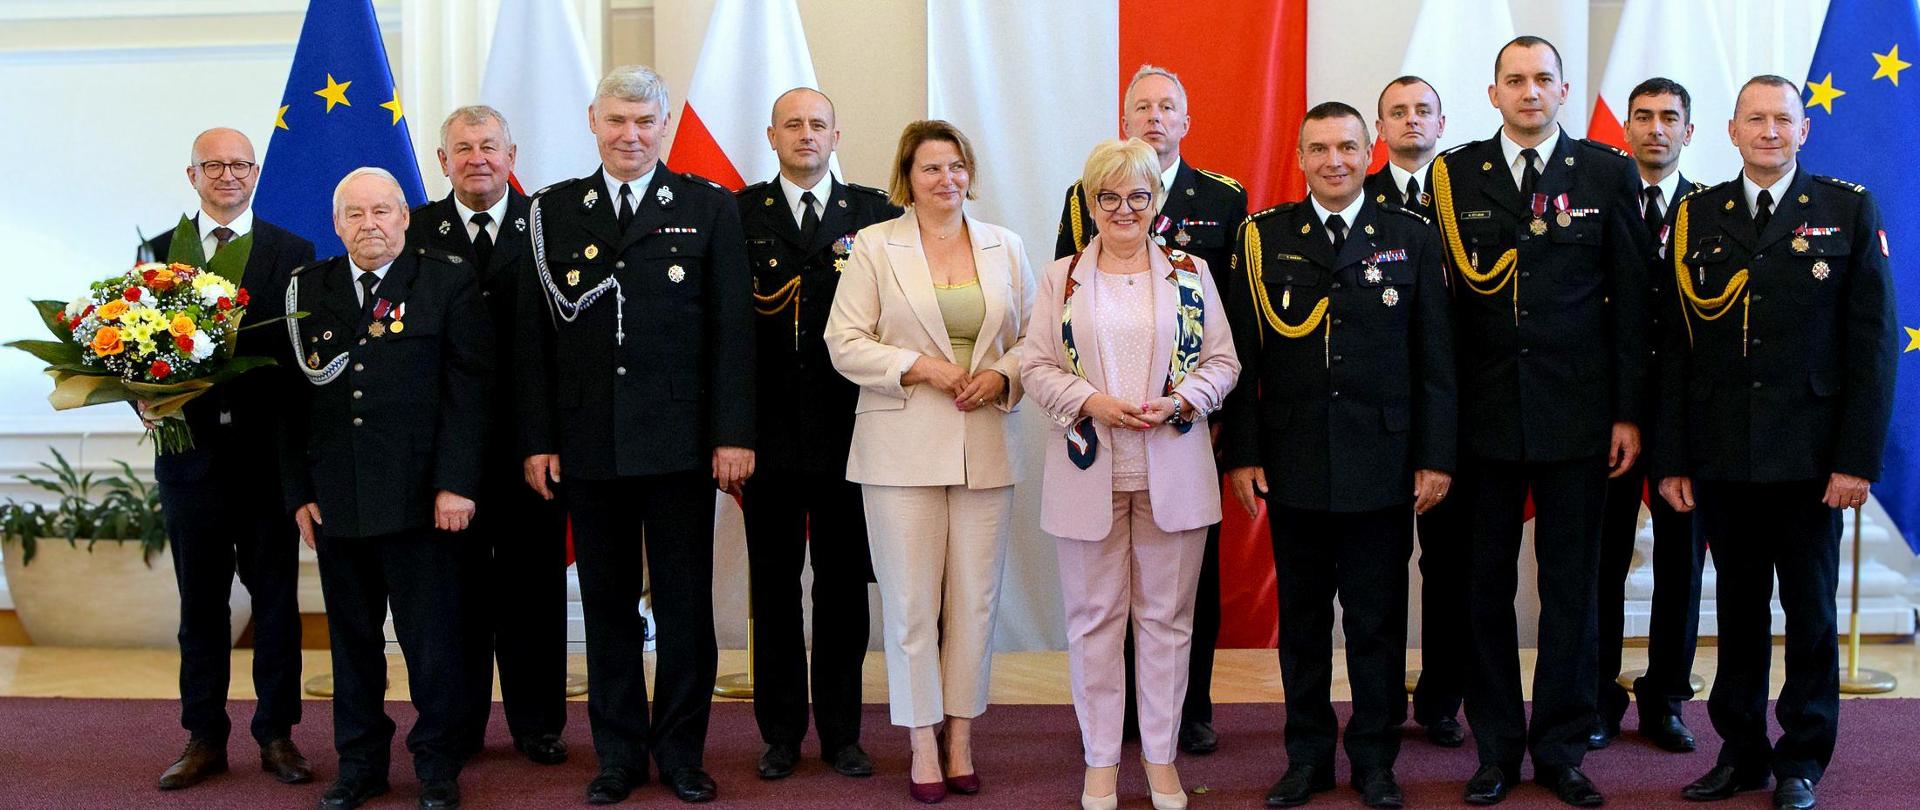 Uroczysta ceremonia w Podkarpackim Urzędzie Wojewódzkim w Rzeszowie